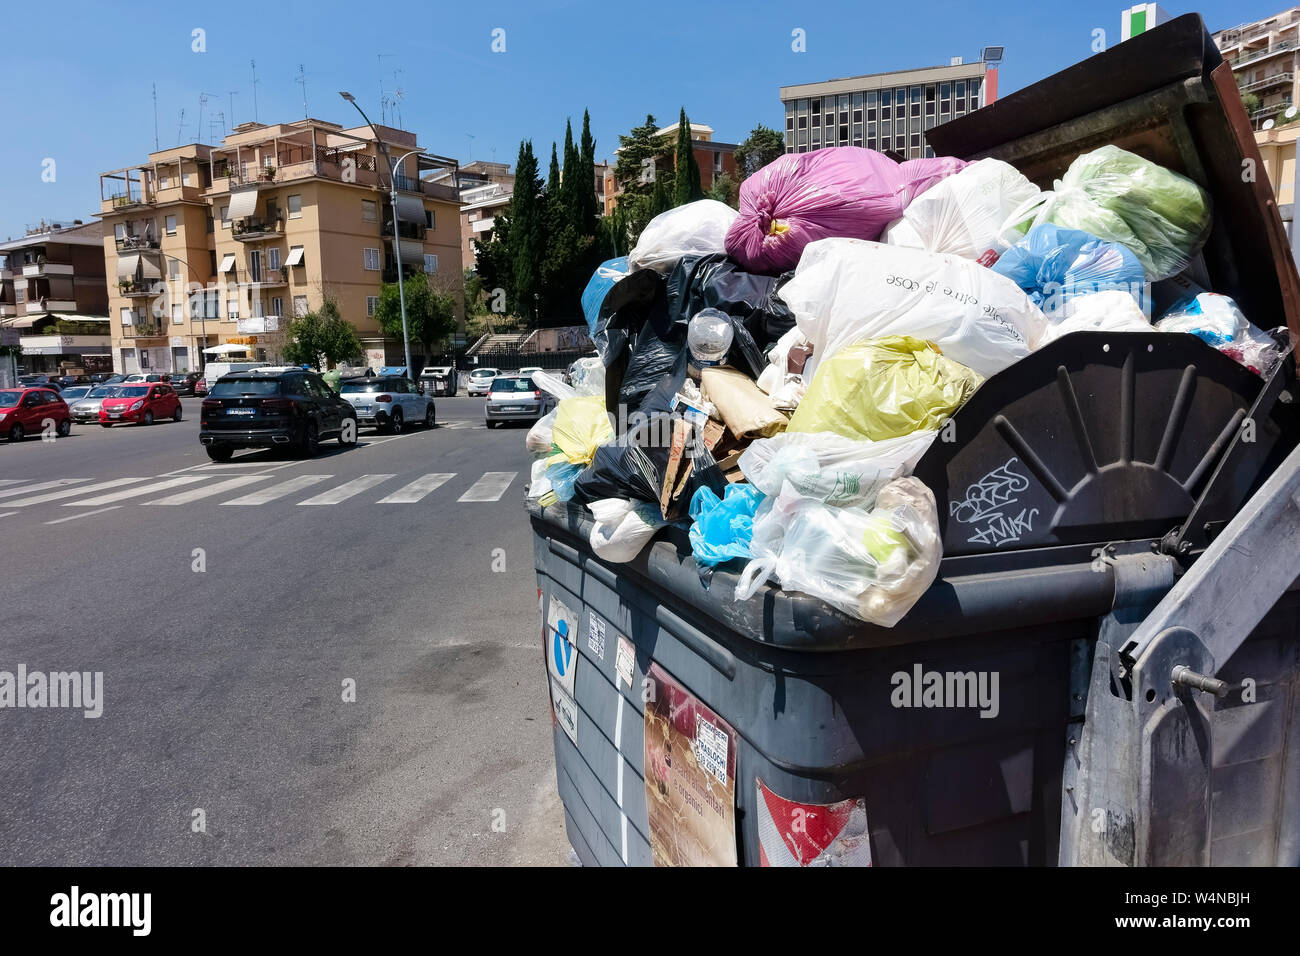 Corbeille pleine d'ordures devant des immeubles d'appartements en copropriété. Les poubelles poubelles débordent. L'incivilité, de l'impolitesse et de la saleté. Rome, Italie, Europe Banque D'Images